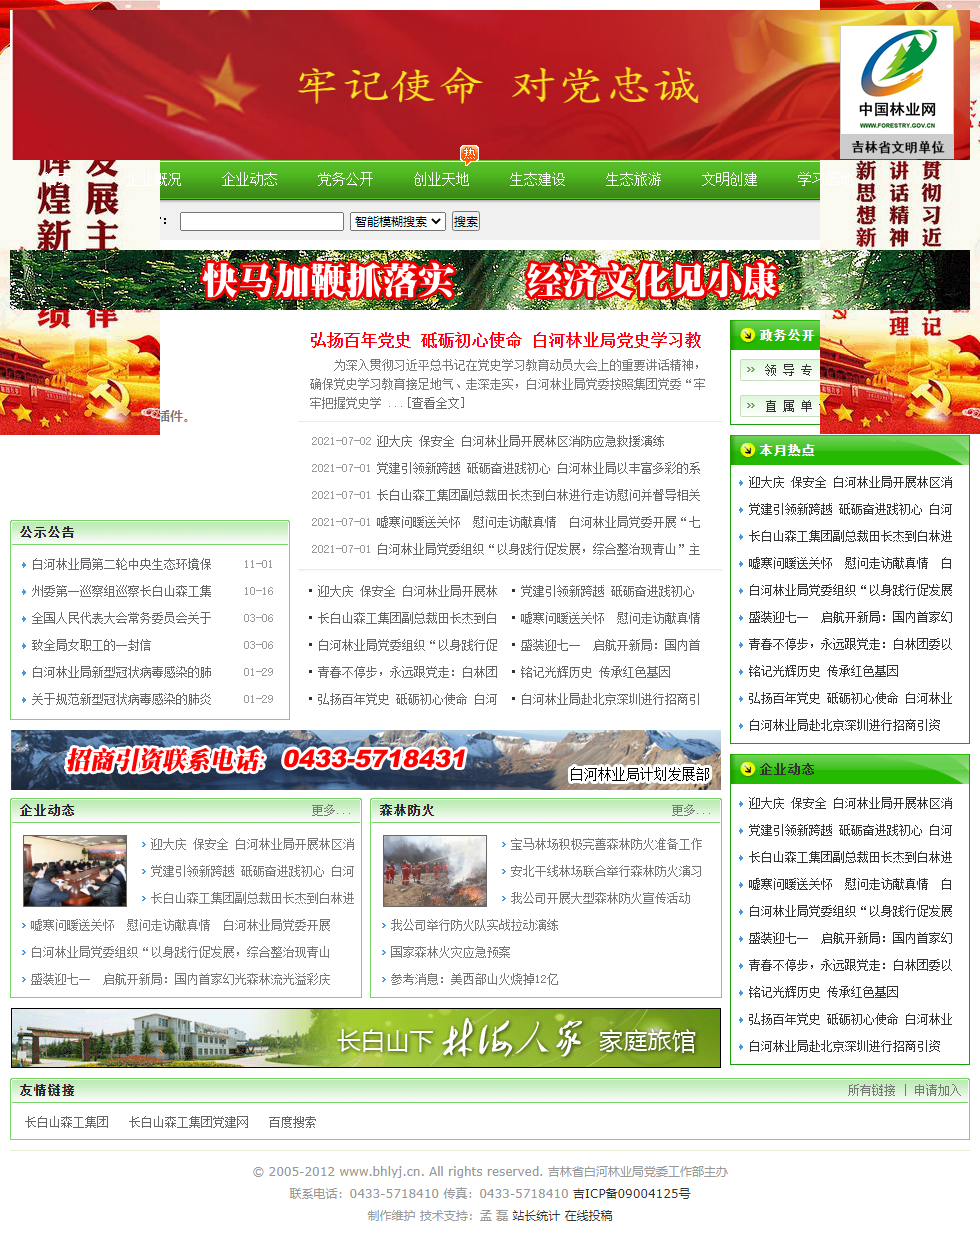 吉林省白河林业局网站案例